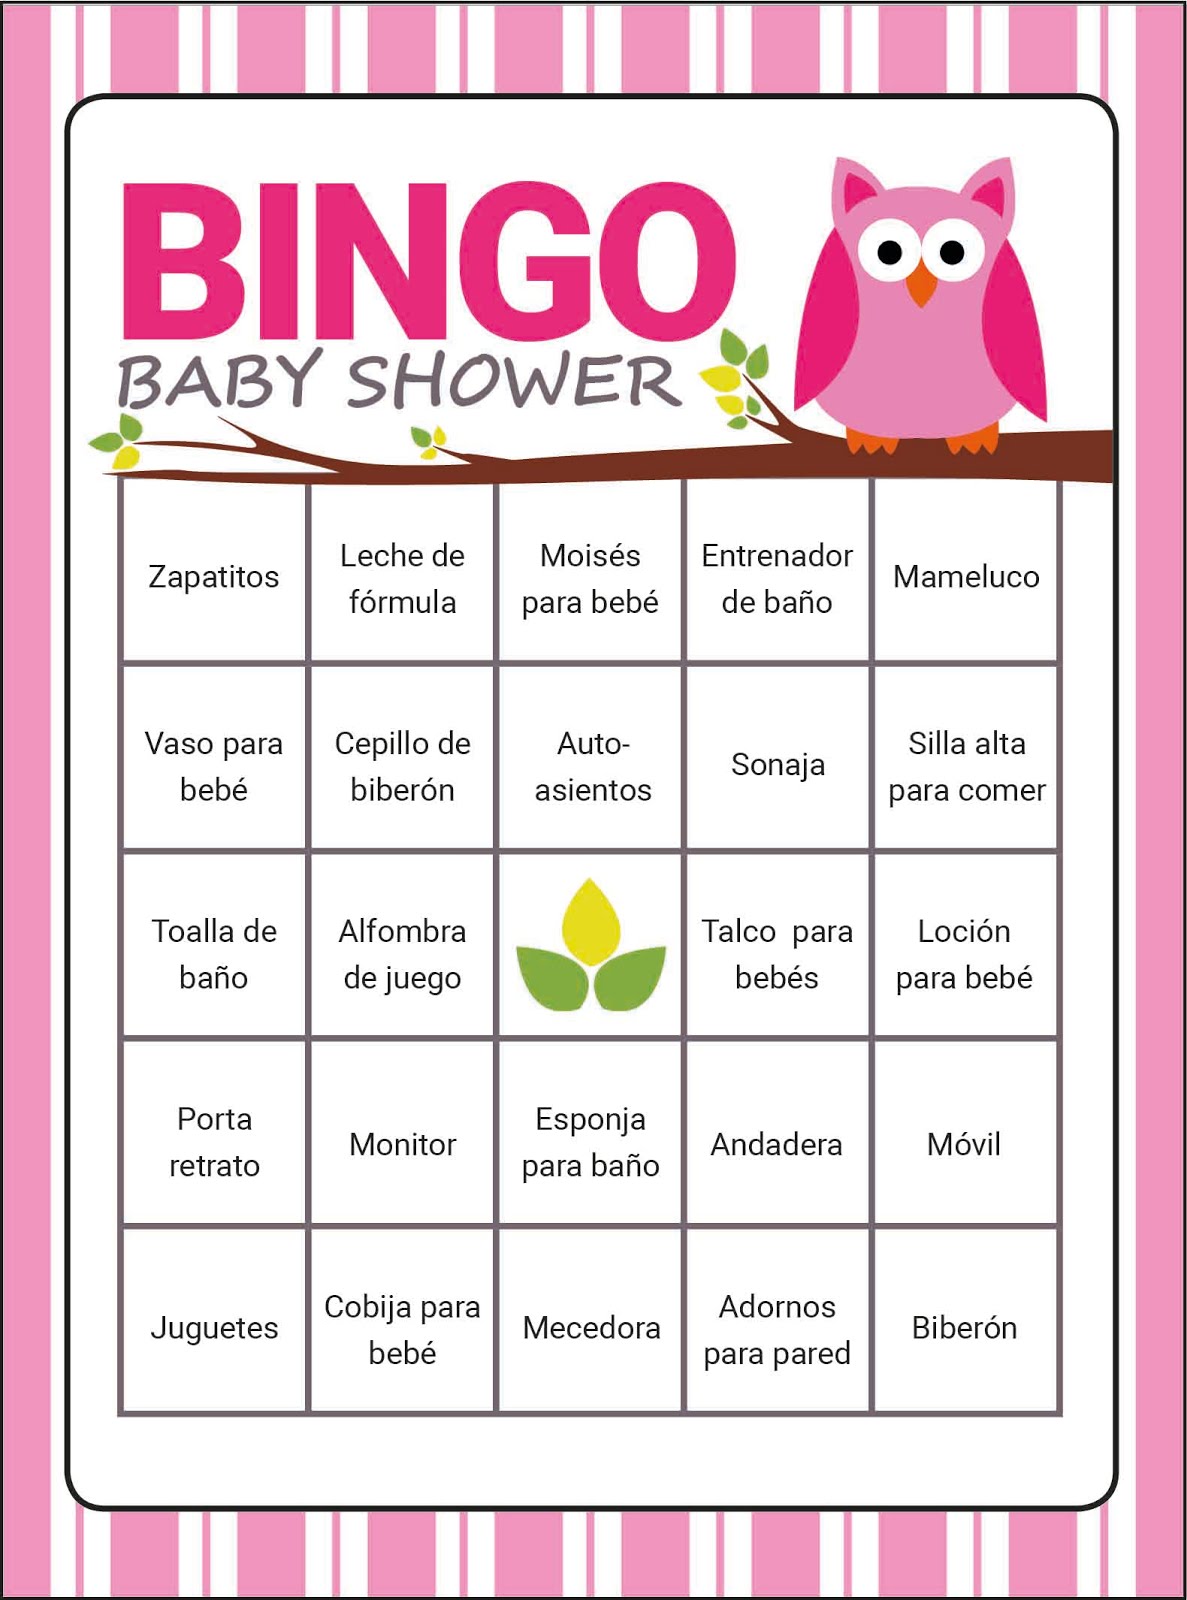 10 Juegos Para Baby Shower Originales Juegos De Baby Shower